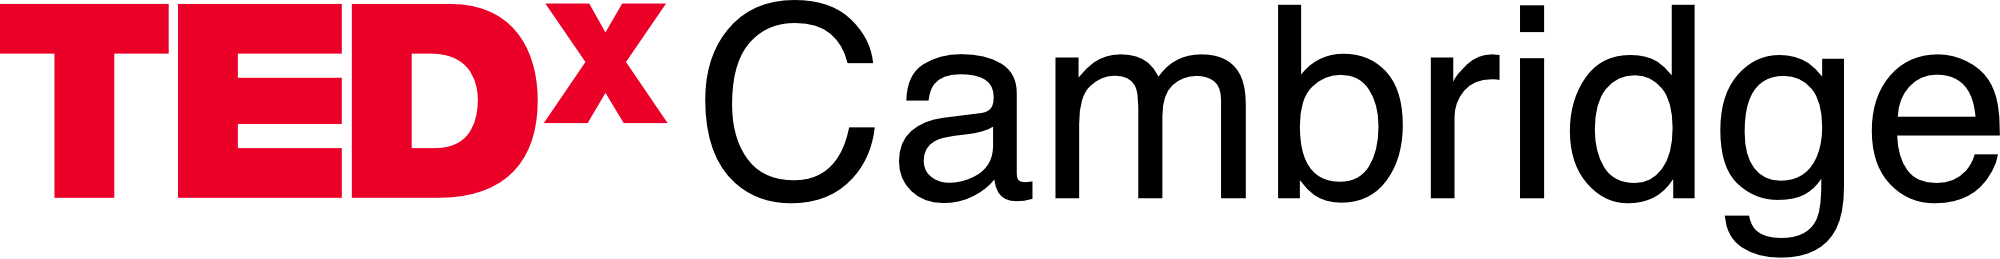 tedx-logo-header